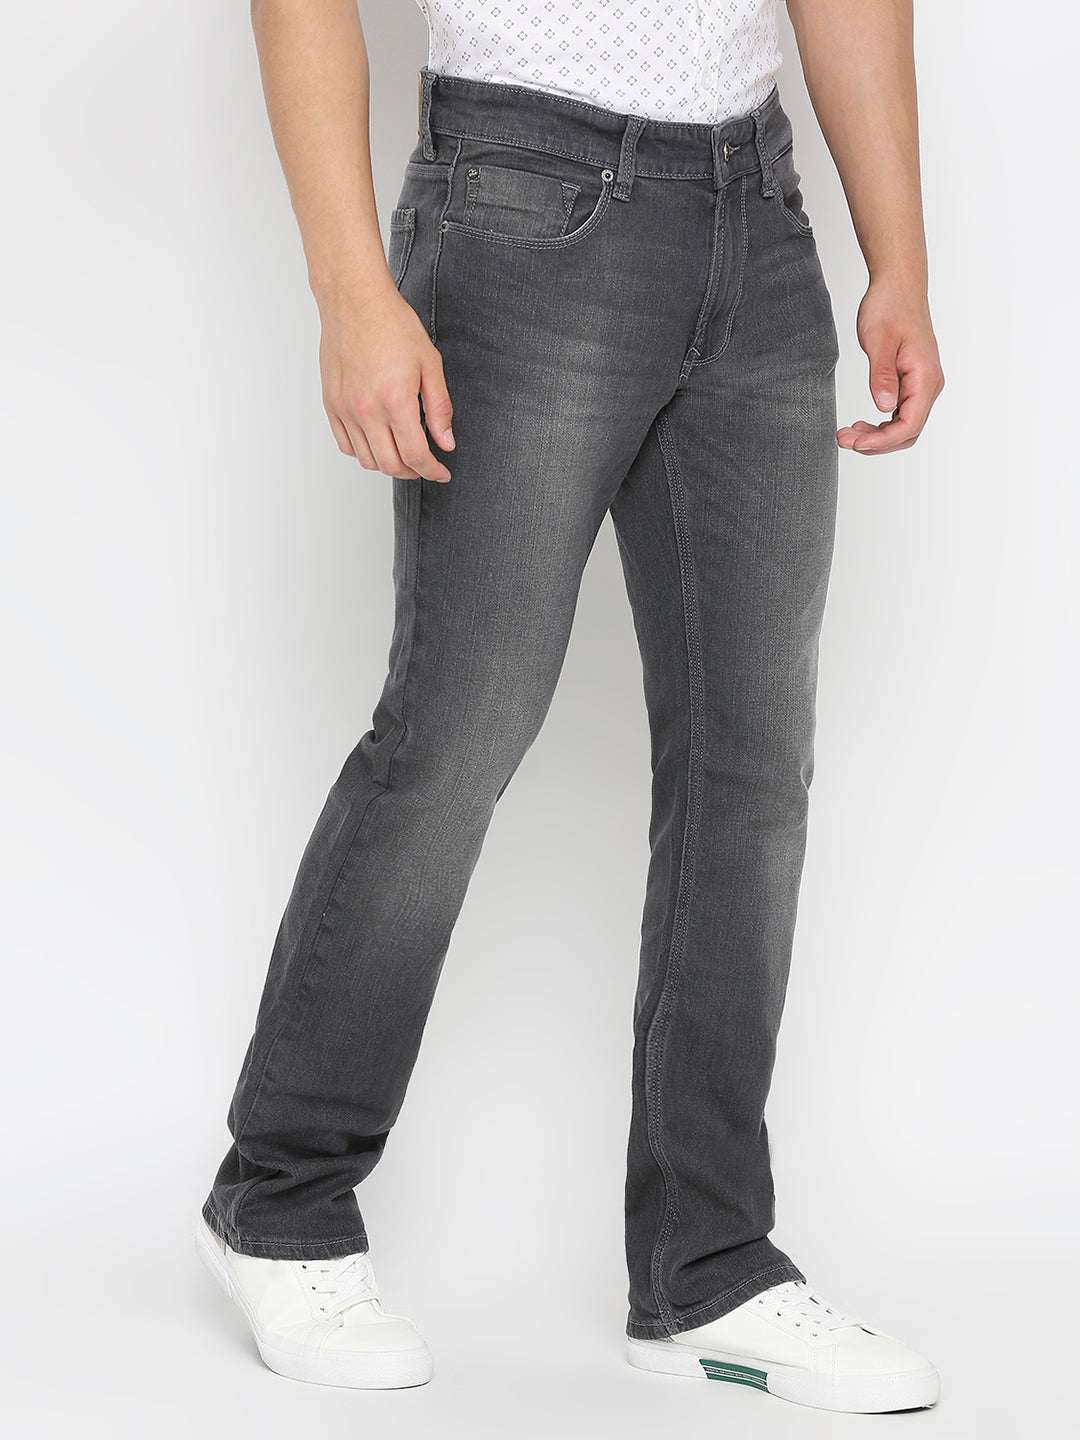 Spykar Dark Grey Cotton Regular Fit Regular Length Jeans For Men (Rafter)